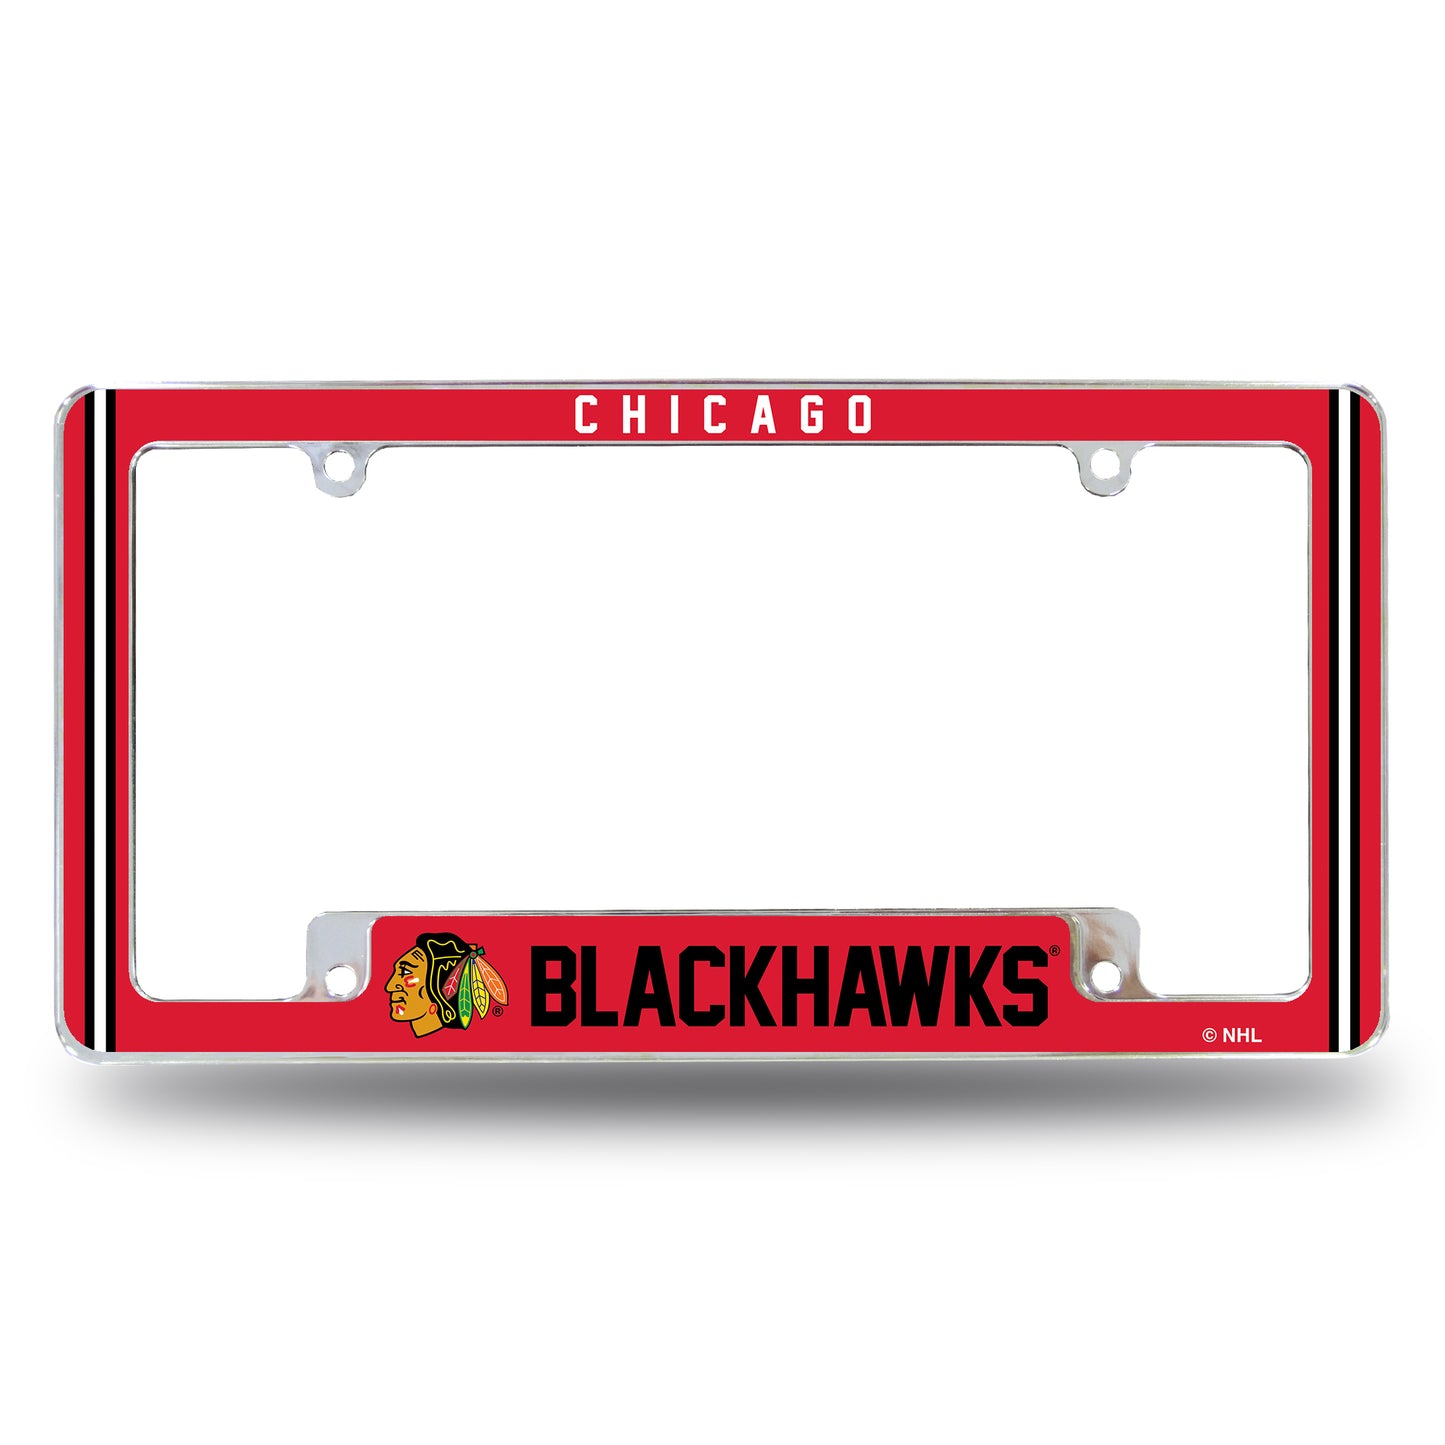 Chicago Blackhawks Red Alternate License Plate Frame